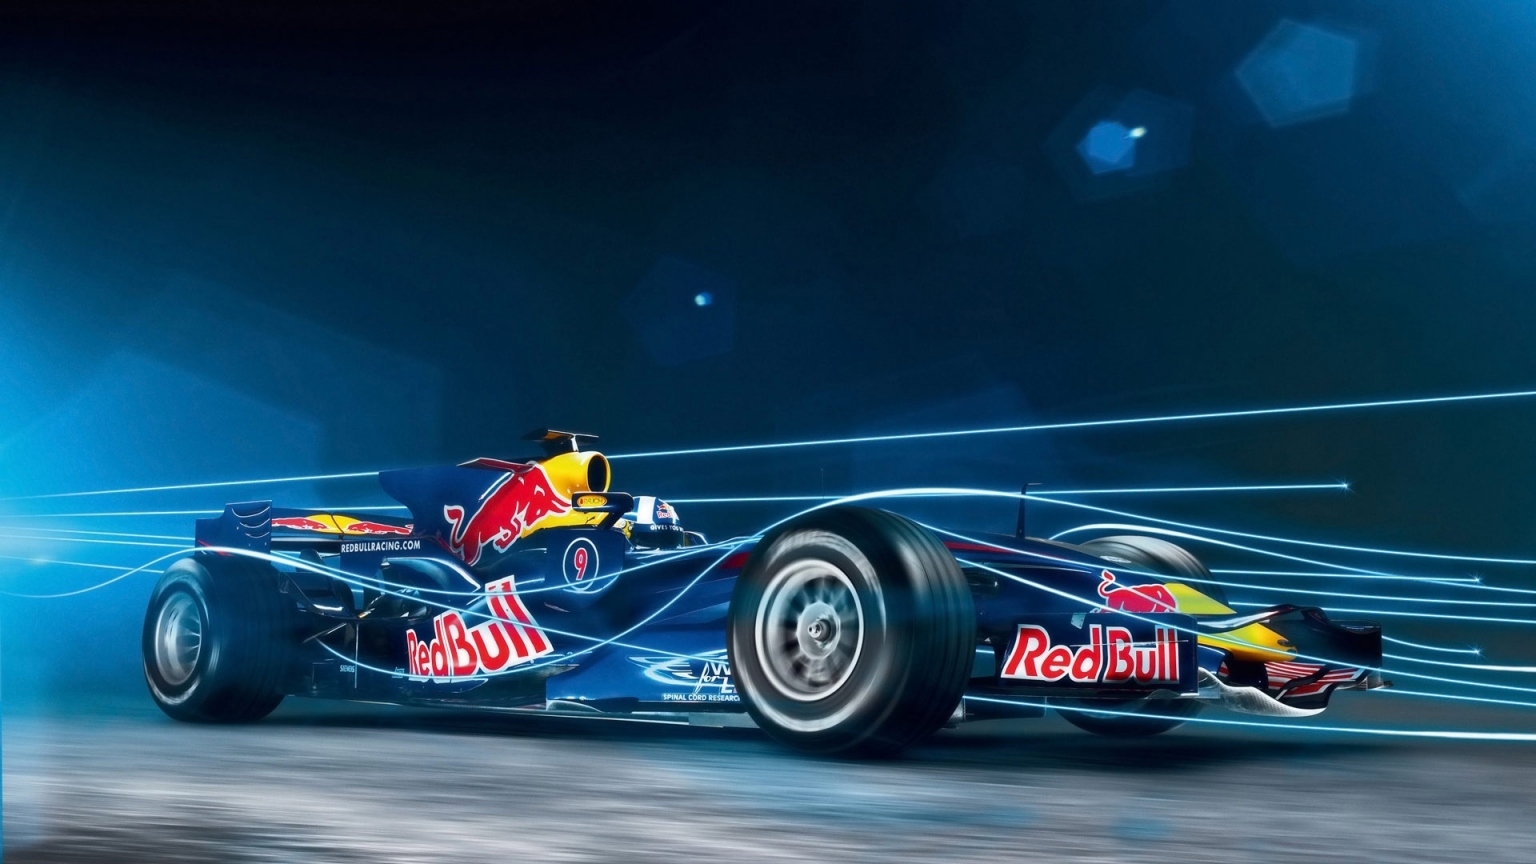 Red Bull Formula 1 for 1536 x 864 HDTV resolution